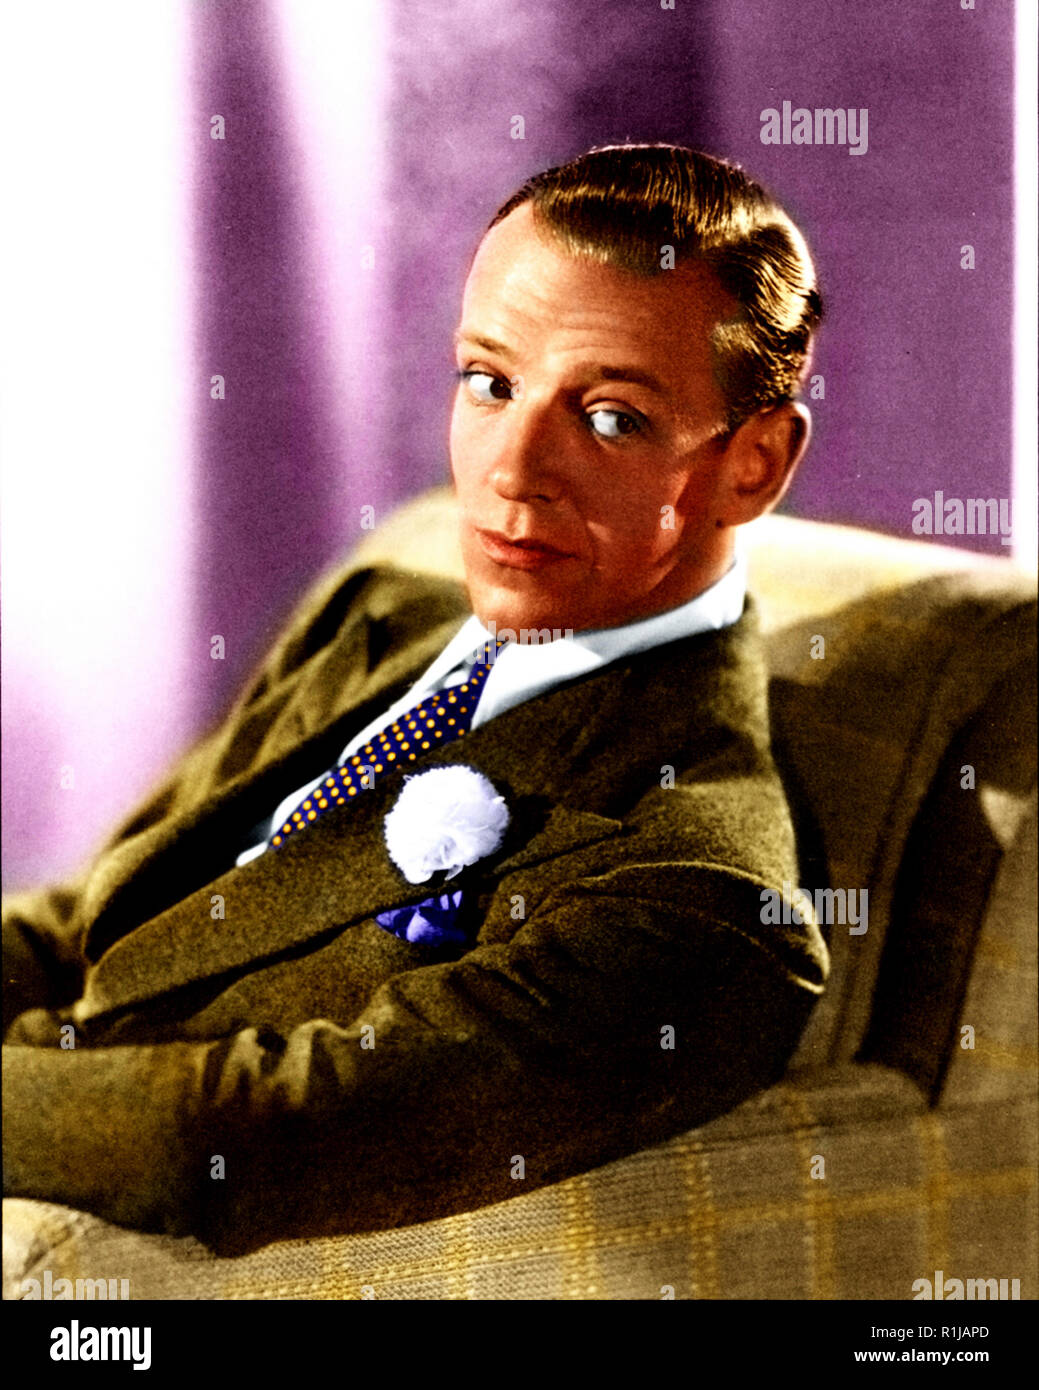 Fred Astaire (nato Frederick Austerlitz;[1] Maggio 10, 1899 ñ 22 giugno 1987) era un ballerino americano, cantante, attrice, coreografo e presentatore televisivo. Egli è ampiamente considerato come uno dei più influenti ballerini nella storia di film e televisione musical Credito: Hollywood Archivio foto / MediaPunch Foto Stock